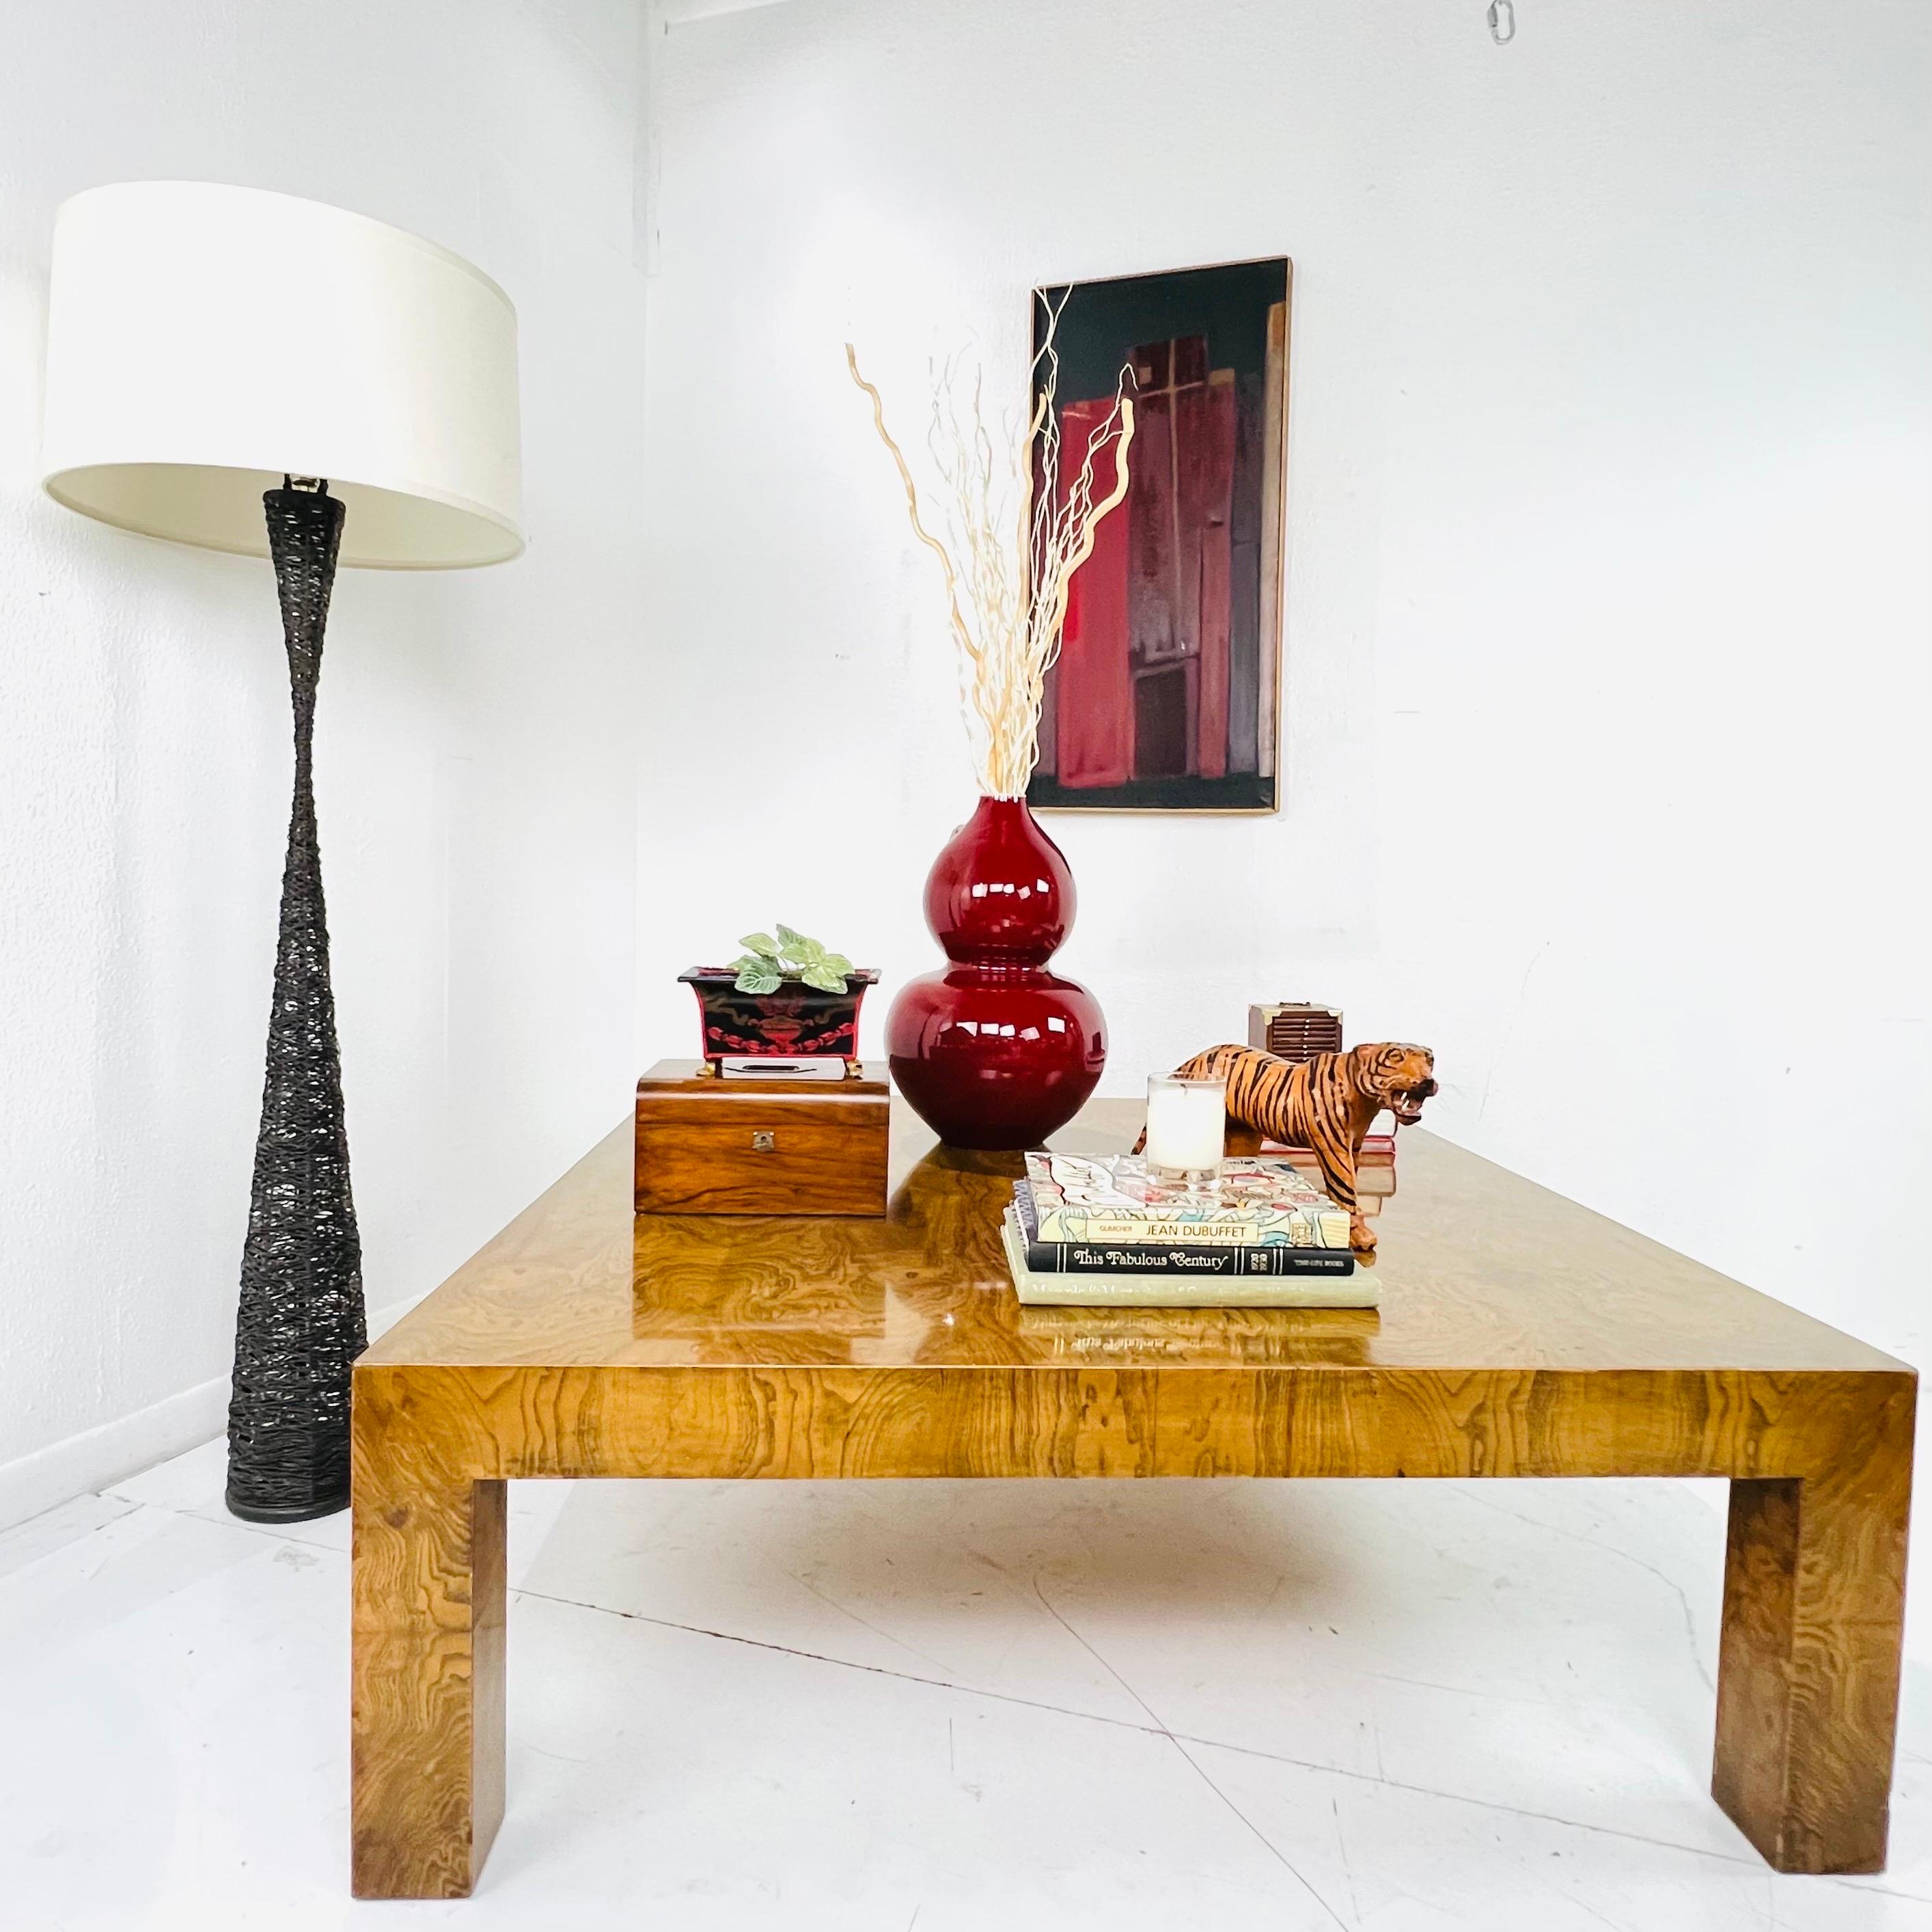 Table basse à grande échelle en bois de bourgogne des années 1970, conçue par Milo Baughman. De belles proportions et un design très intemporel. De superbes détails comme le placage épais et riche. La table est robuste et en bon état vintage avec